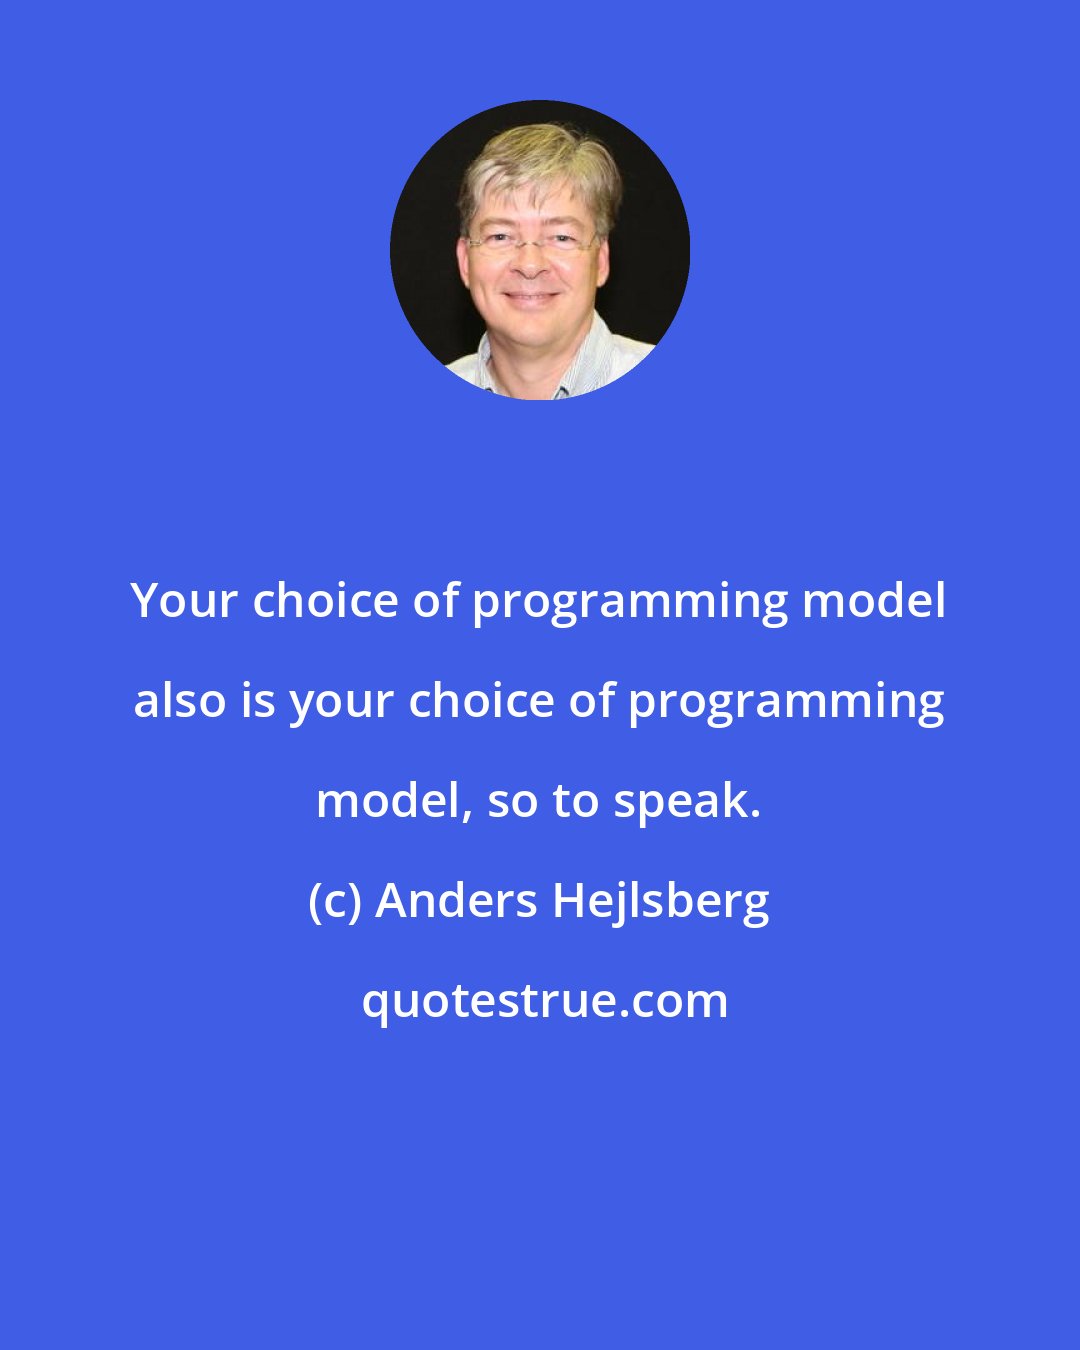 Anders Hejlsberg: Your choice of programming model also is your choice of programming model, so to speak.